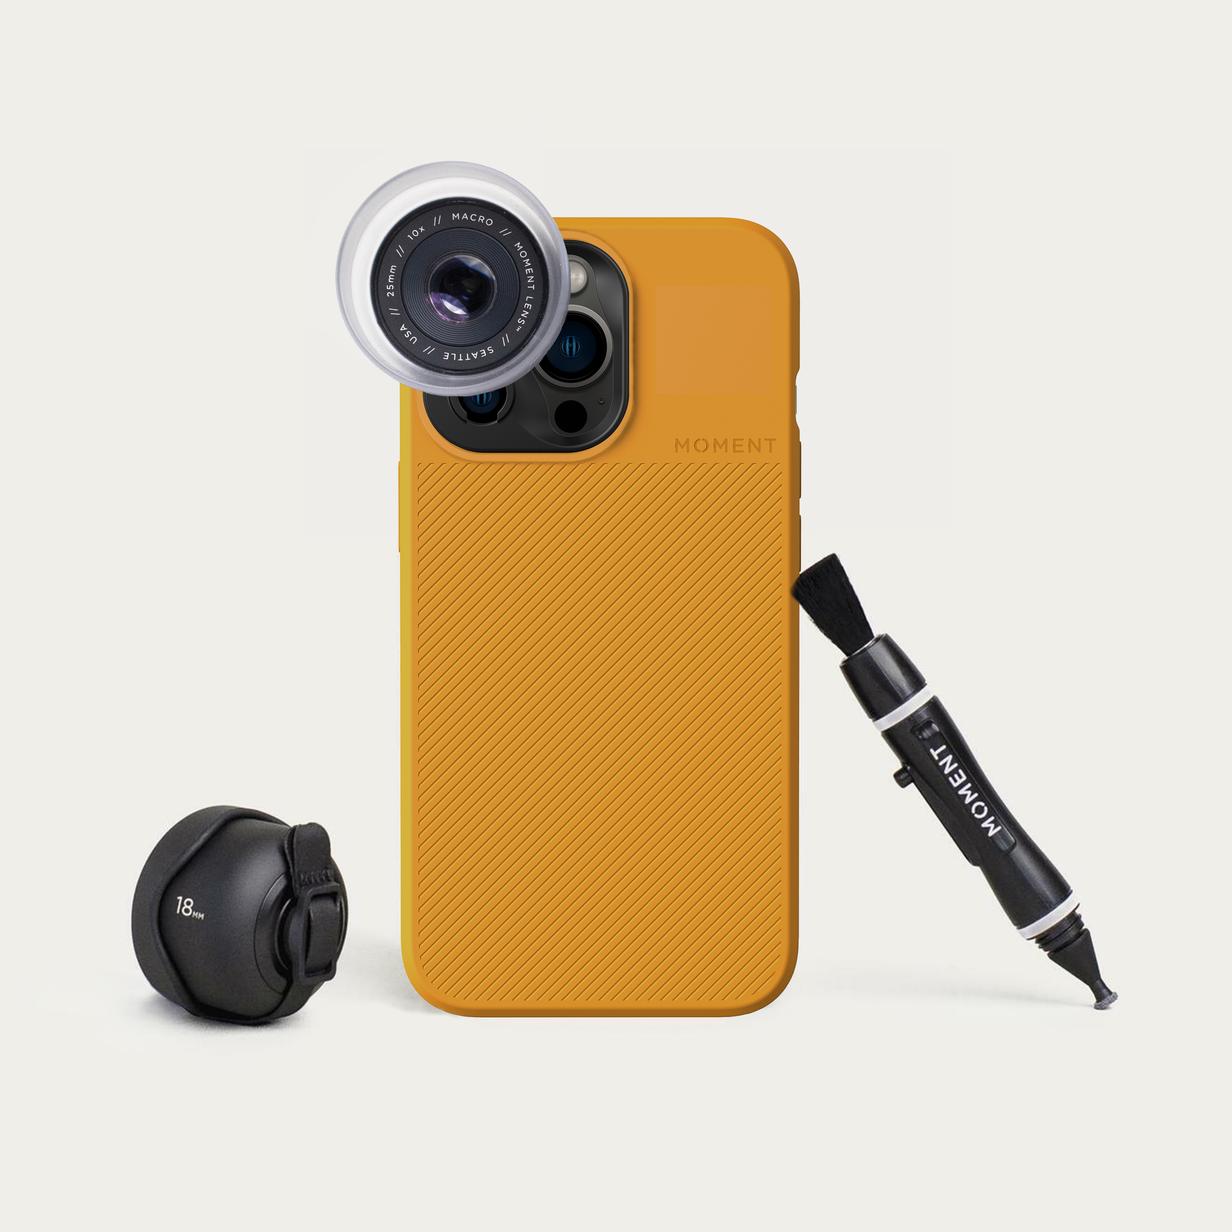 Starter Kit Lens For Samsung Cameras